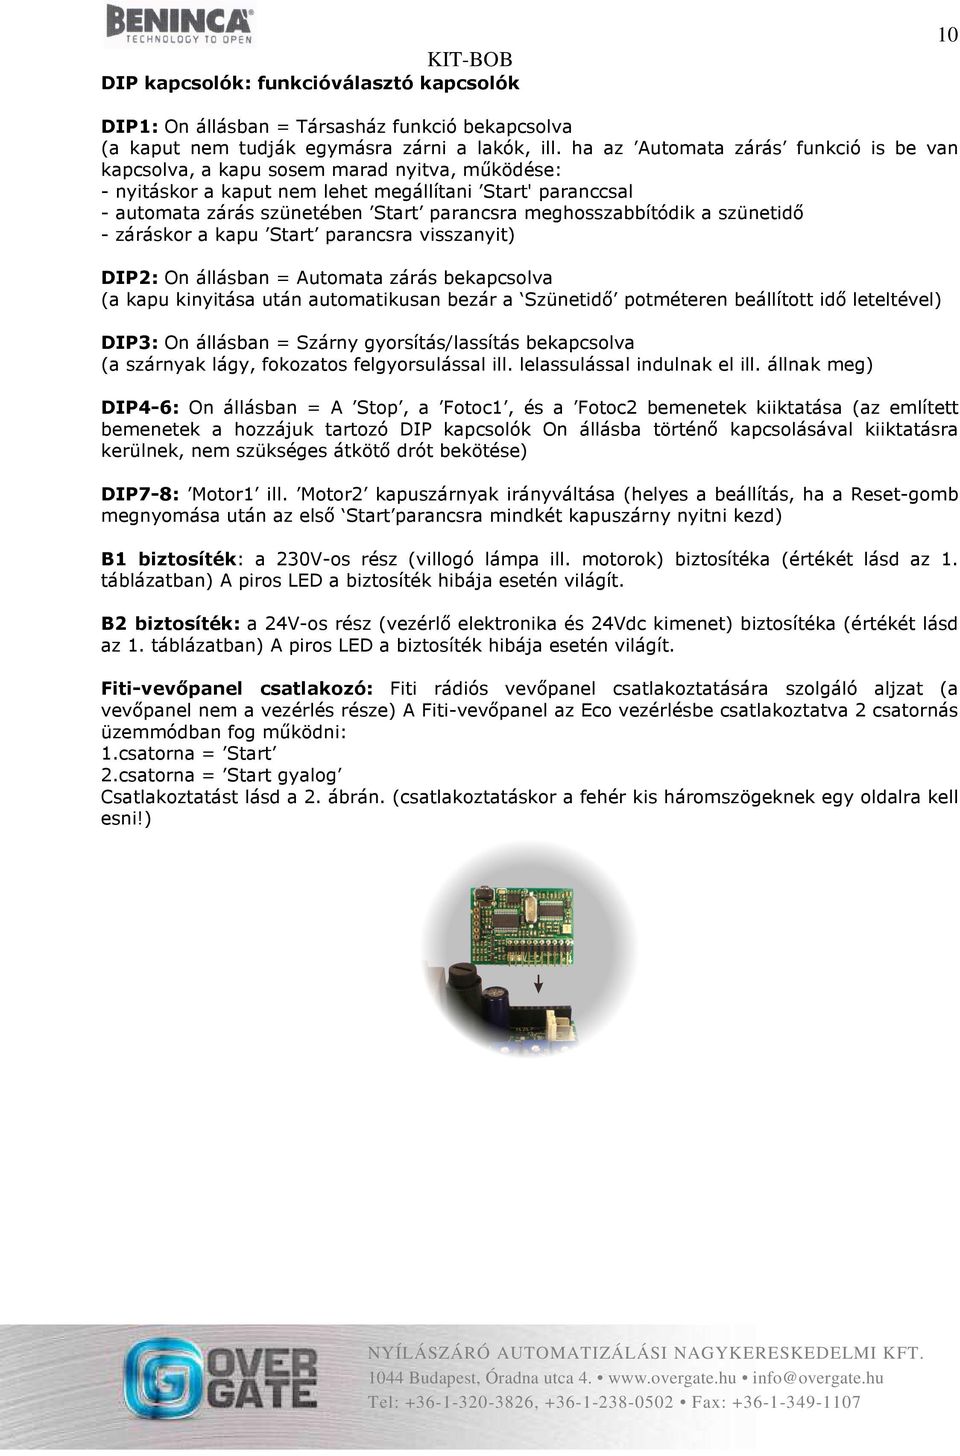 KIT BOB ECO2 vezérléssel - PDF Ingyenes letöltés